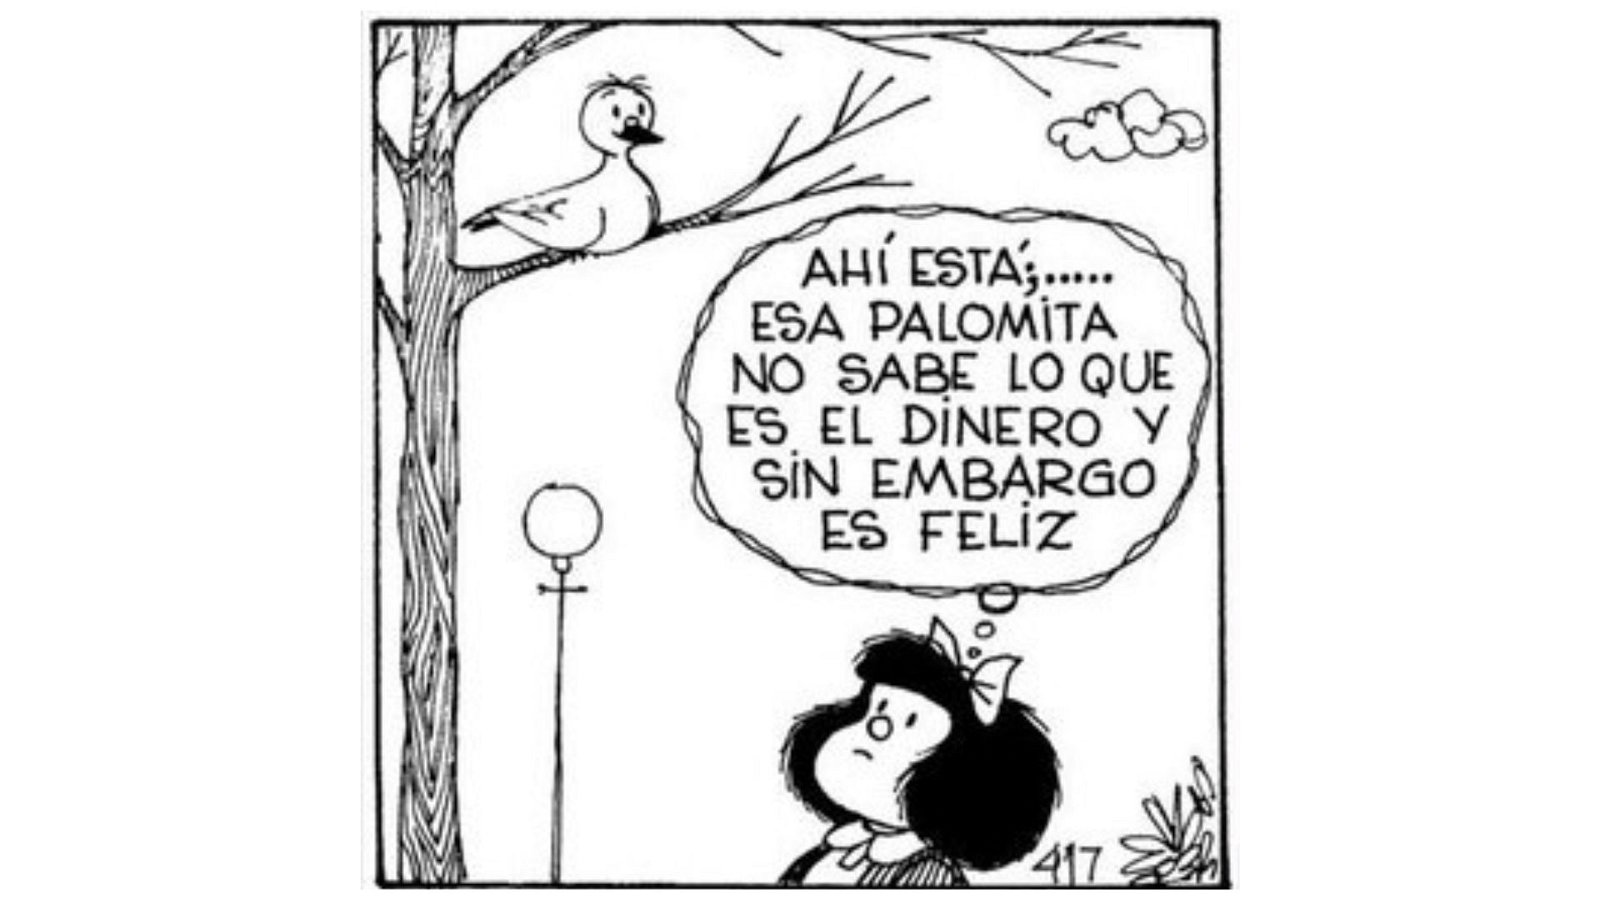 Ahi esta, esa palomita no sabe lo que es el dinero y sin embargo es feliz - Mafalda